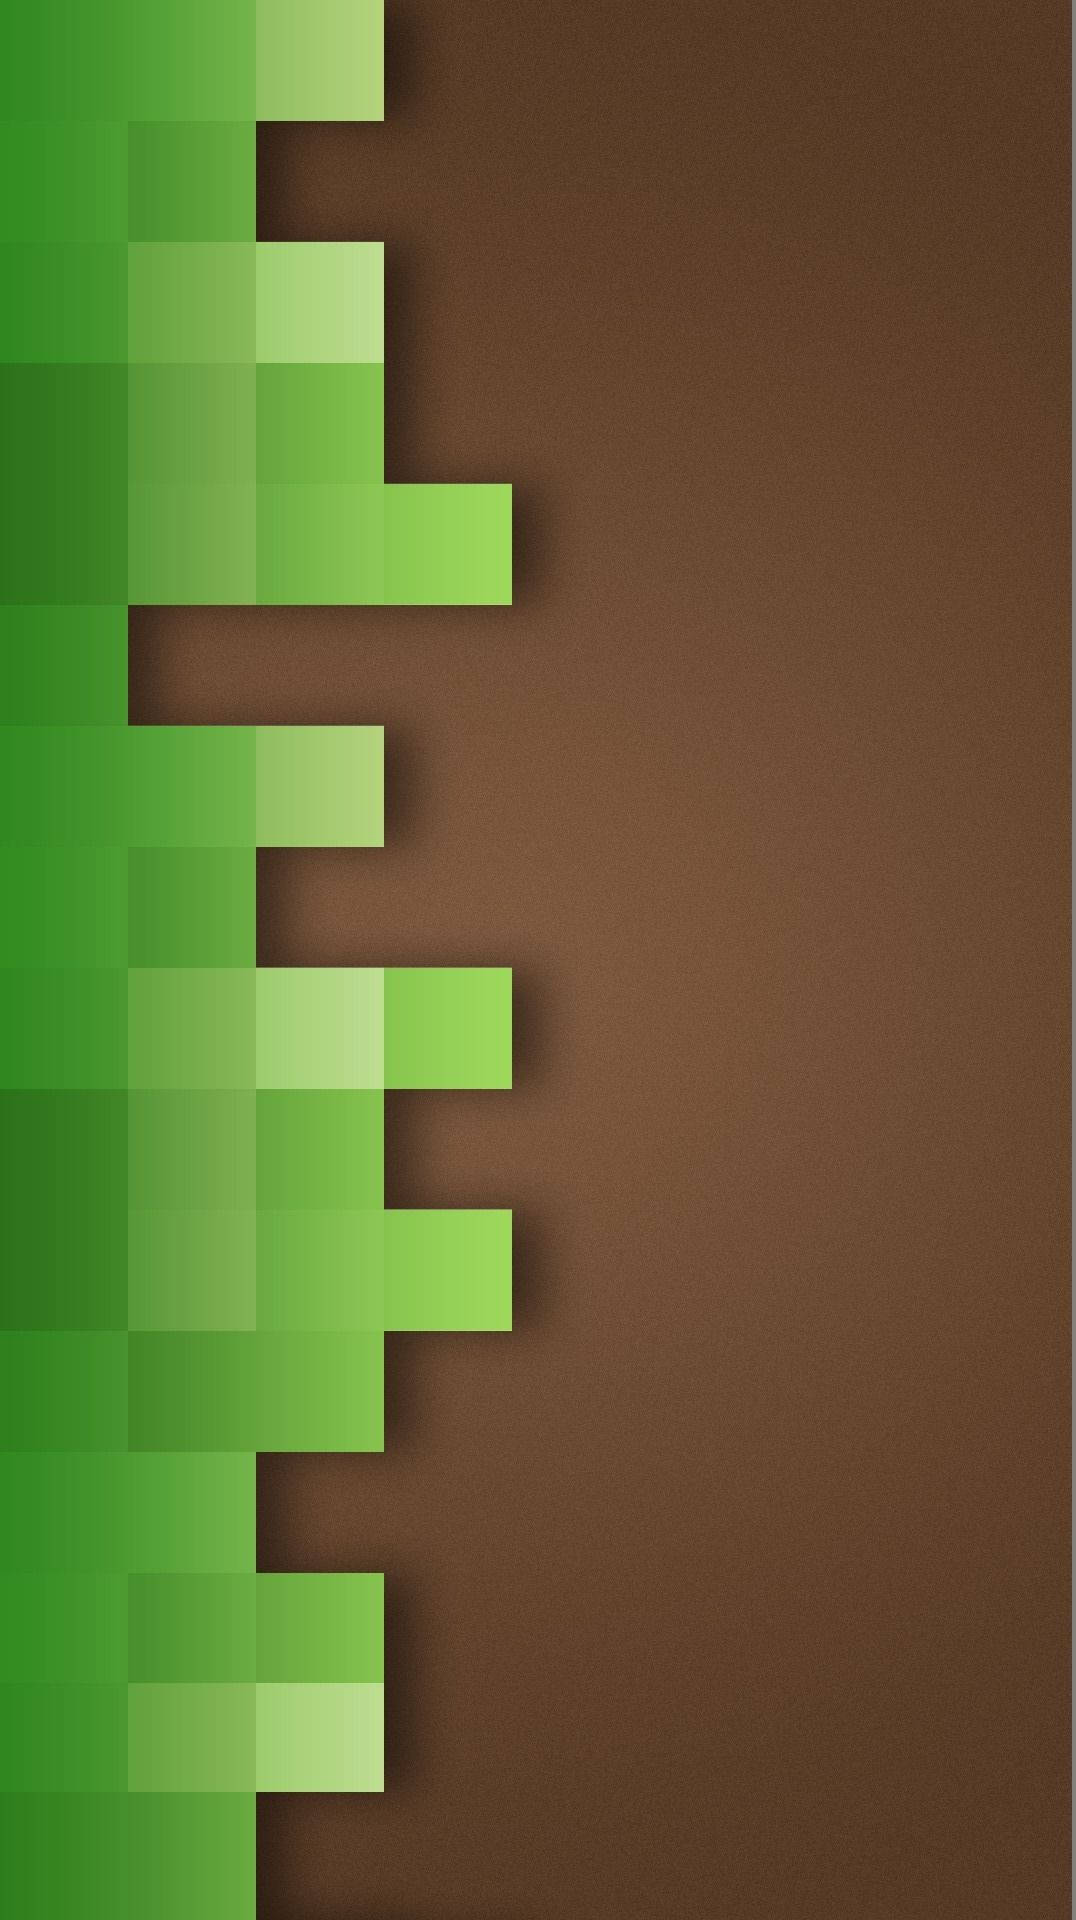 Minecraften El Teléfono, Verde Y Marrón. Fondo de pantalla